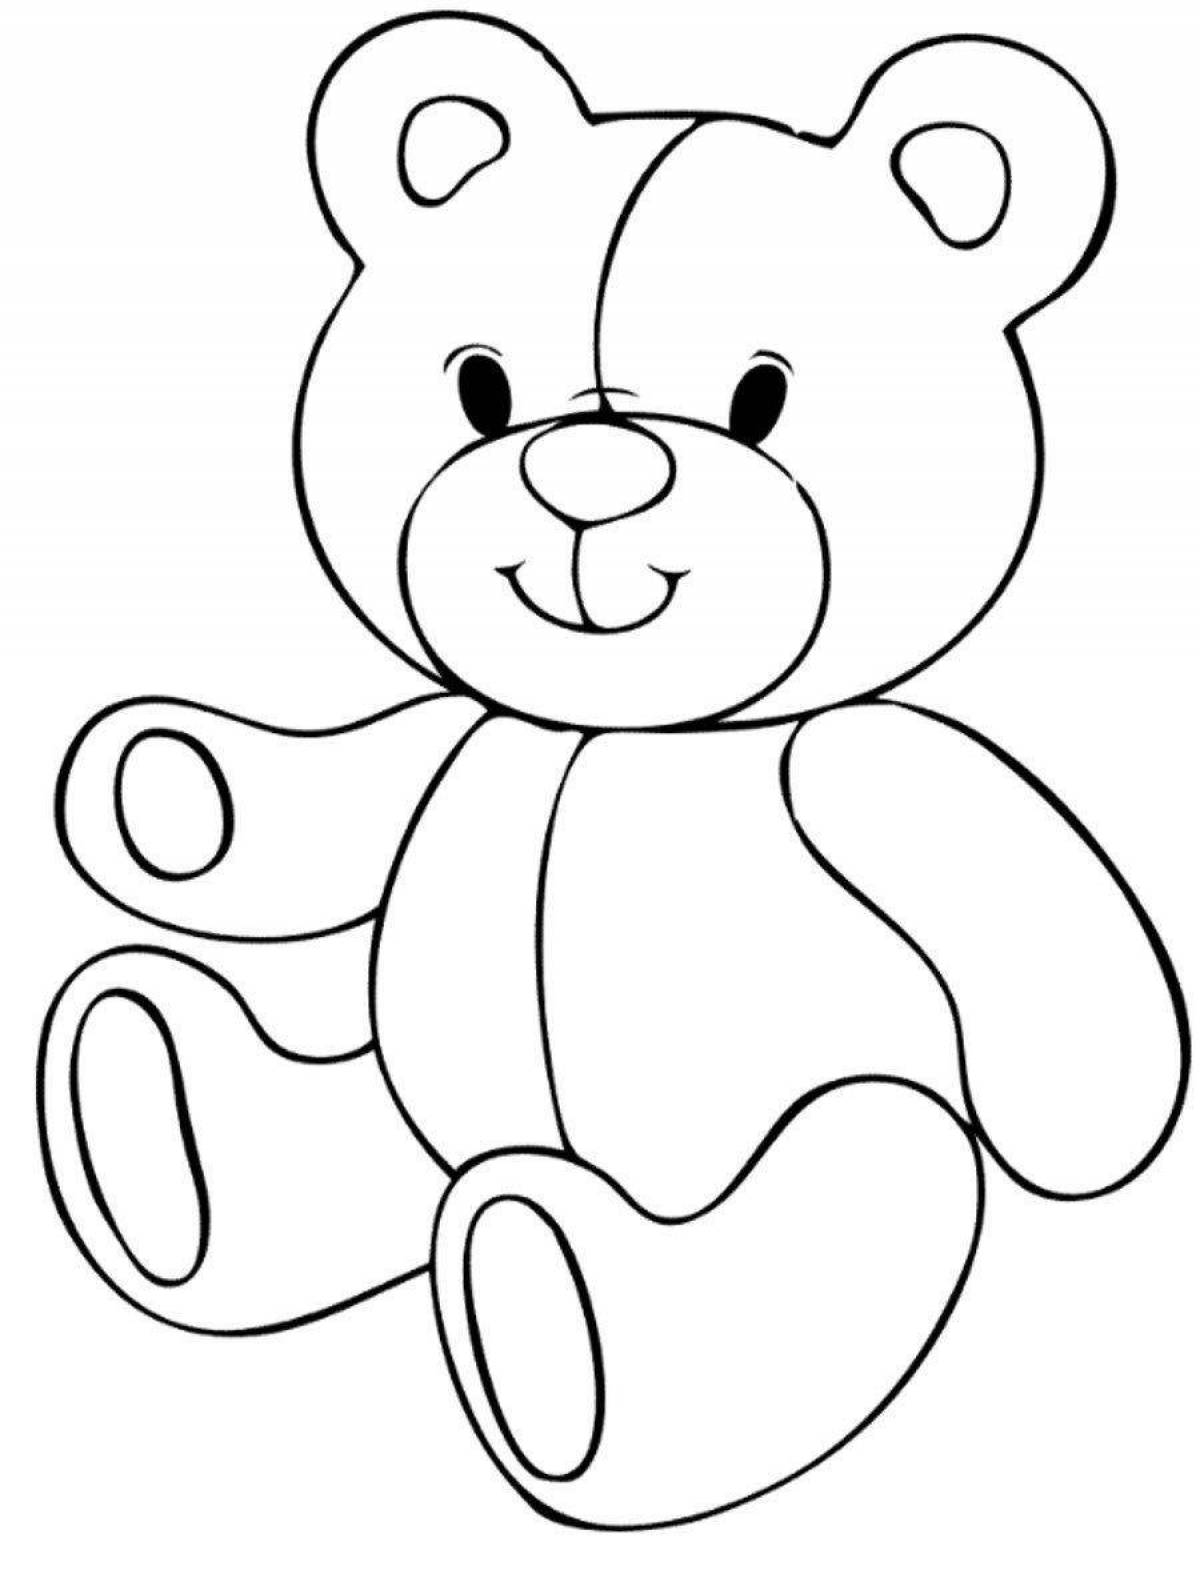 Раскраска медвежонок для детей